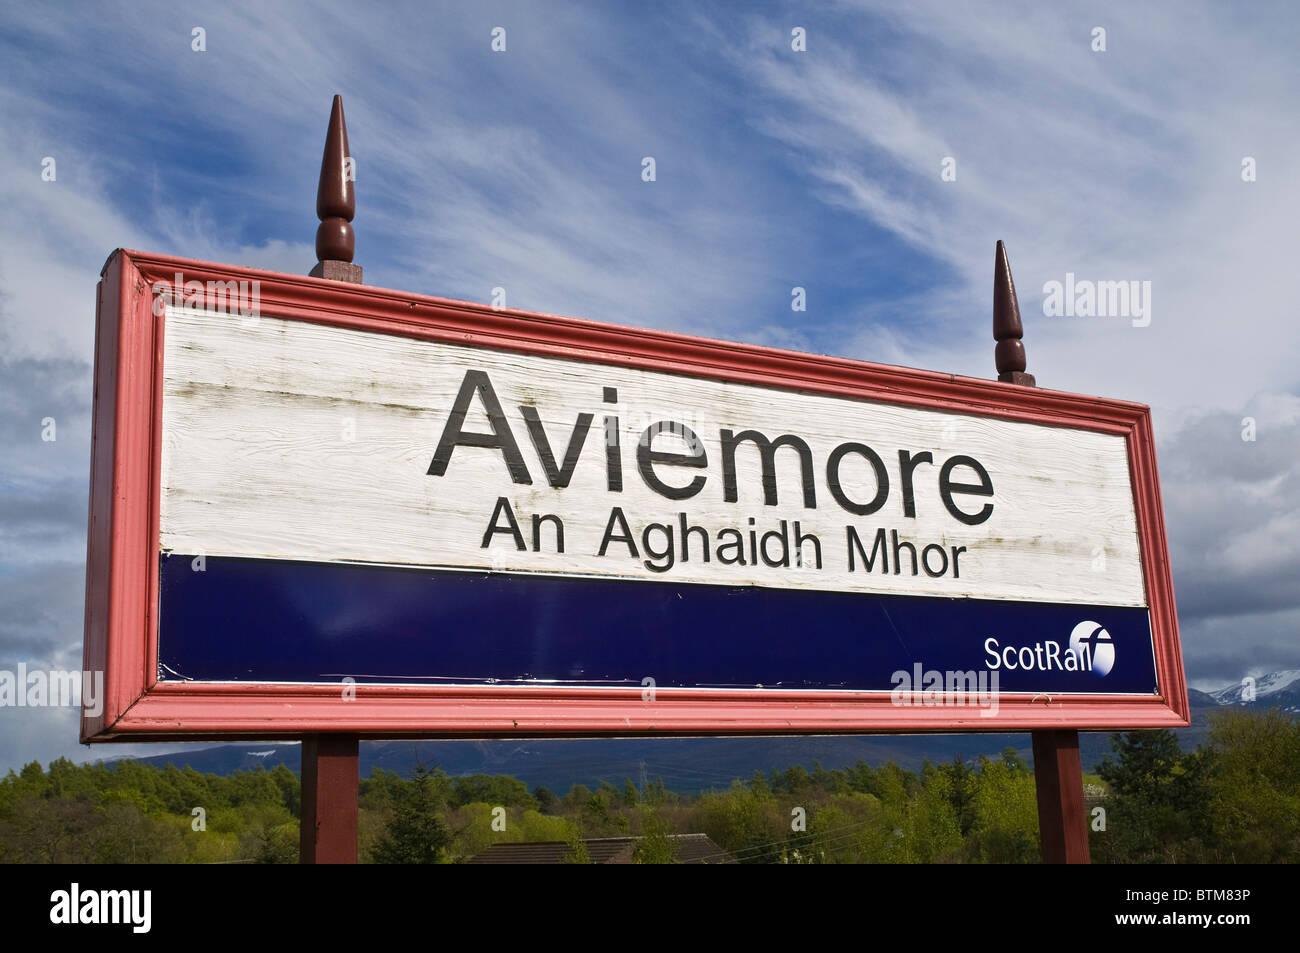 dh Aviemores gare AVIEMORE INVERNESSSHIRE plate-forme rail signe gaélique poste de signalisation ecosse deux langues bilingues Banque D'Images